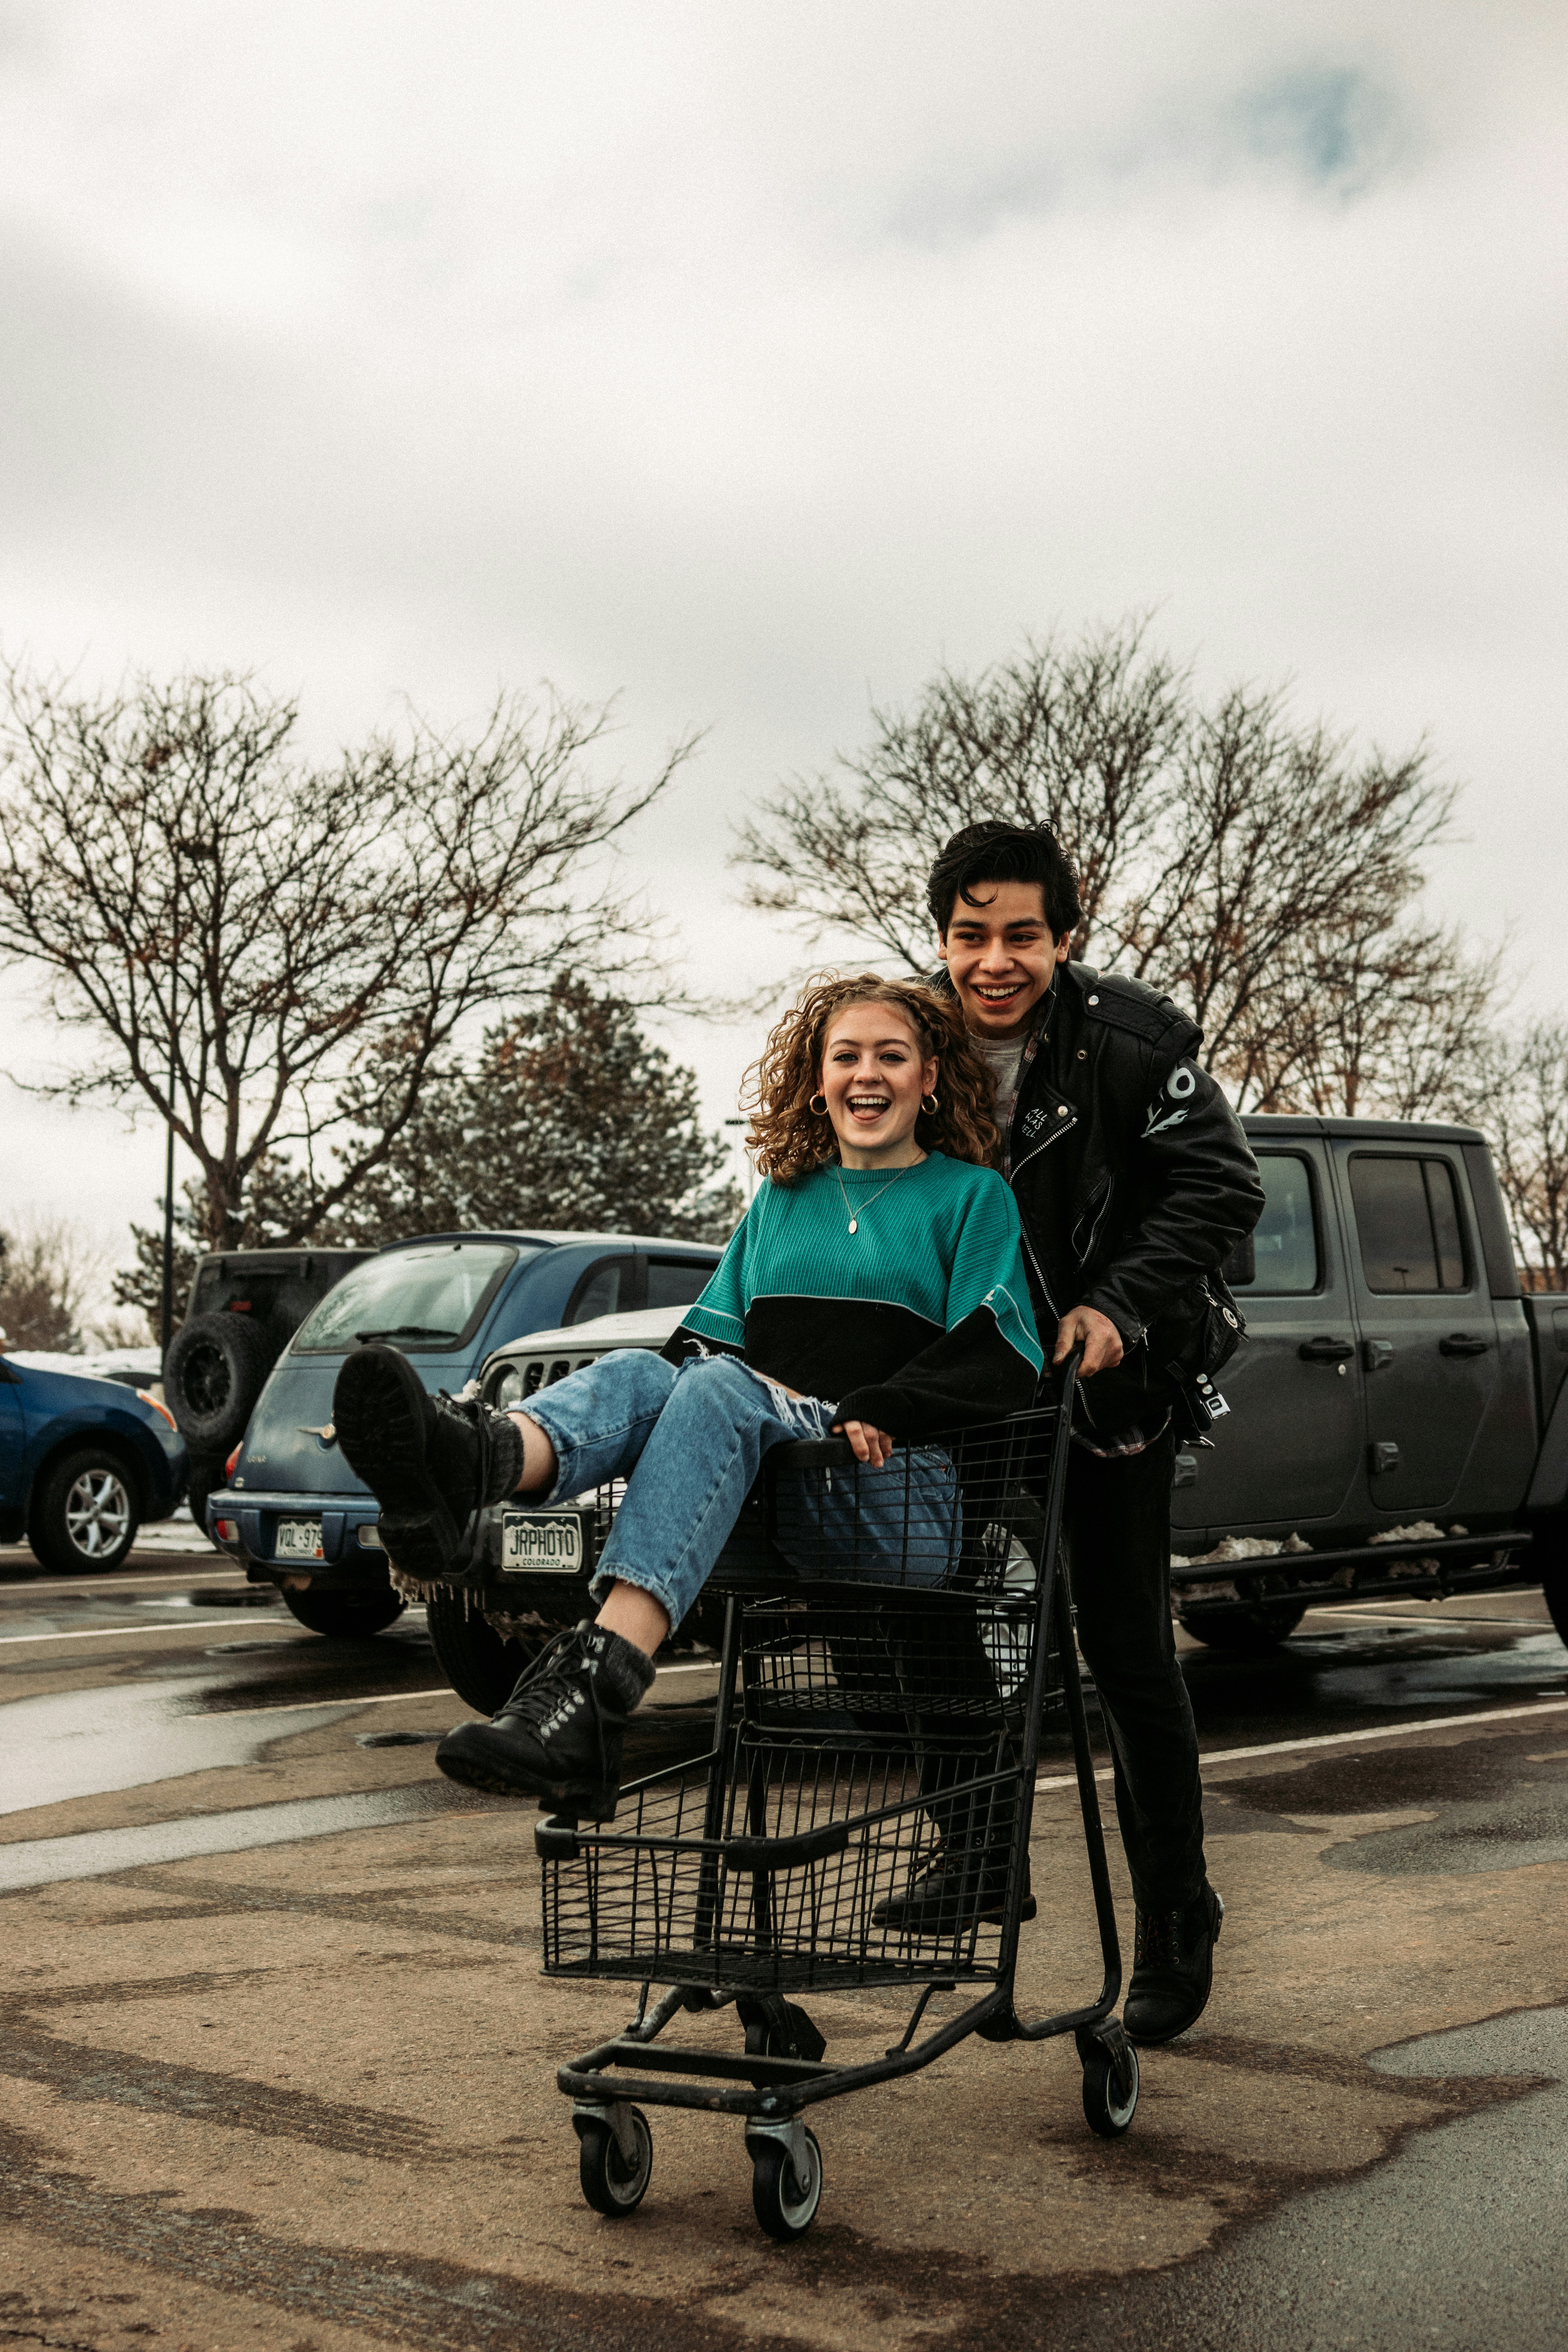 man and woman sitting on black metal shopping cart during daytime